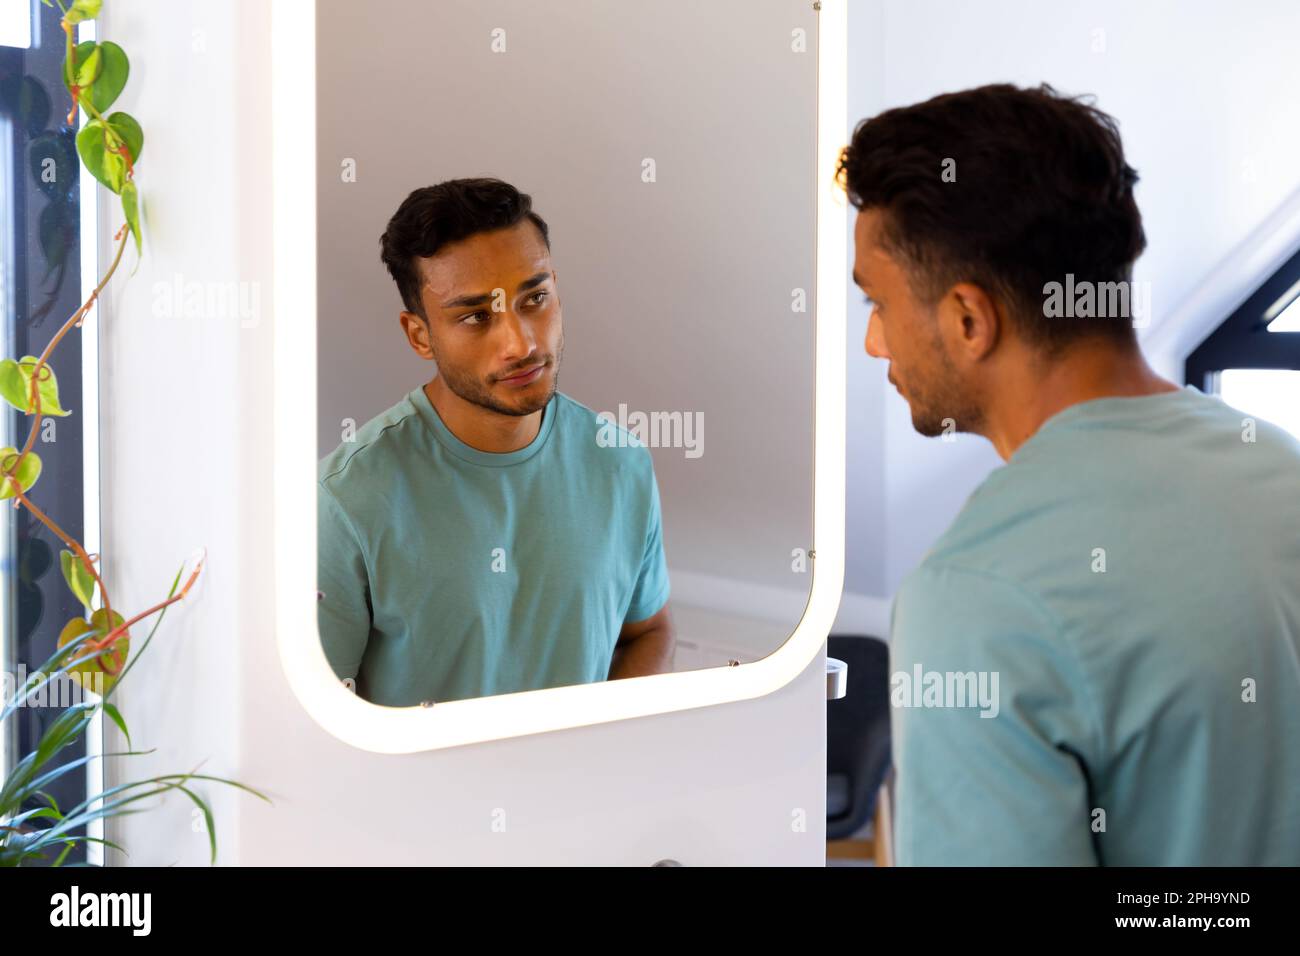 Homme biracial se regardant dans le miroir de salle de bains Banque D'Images